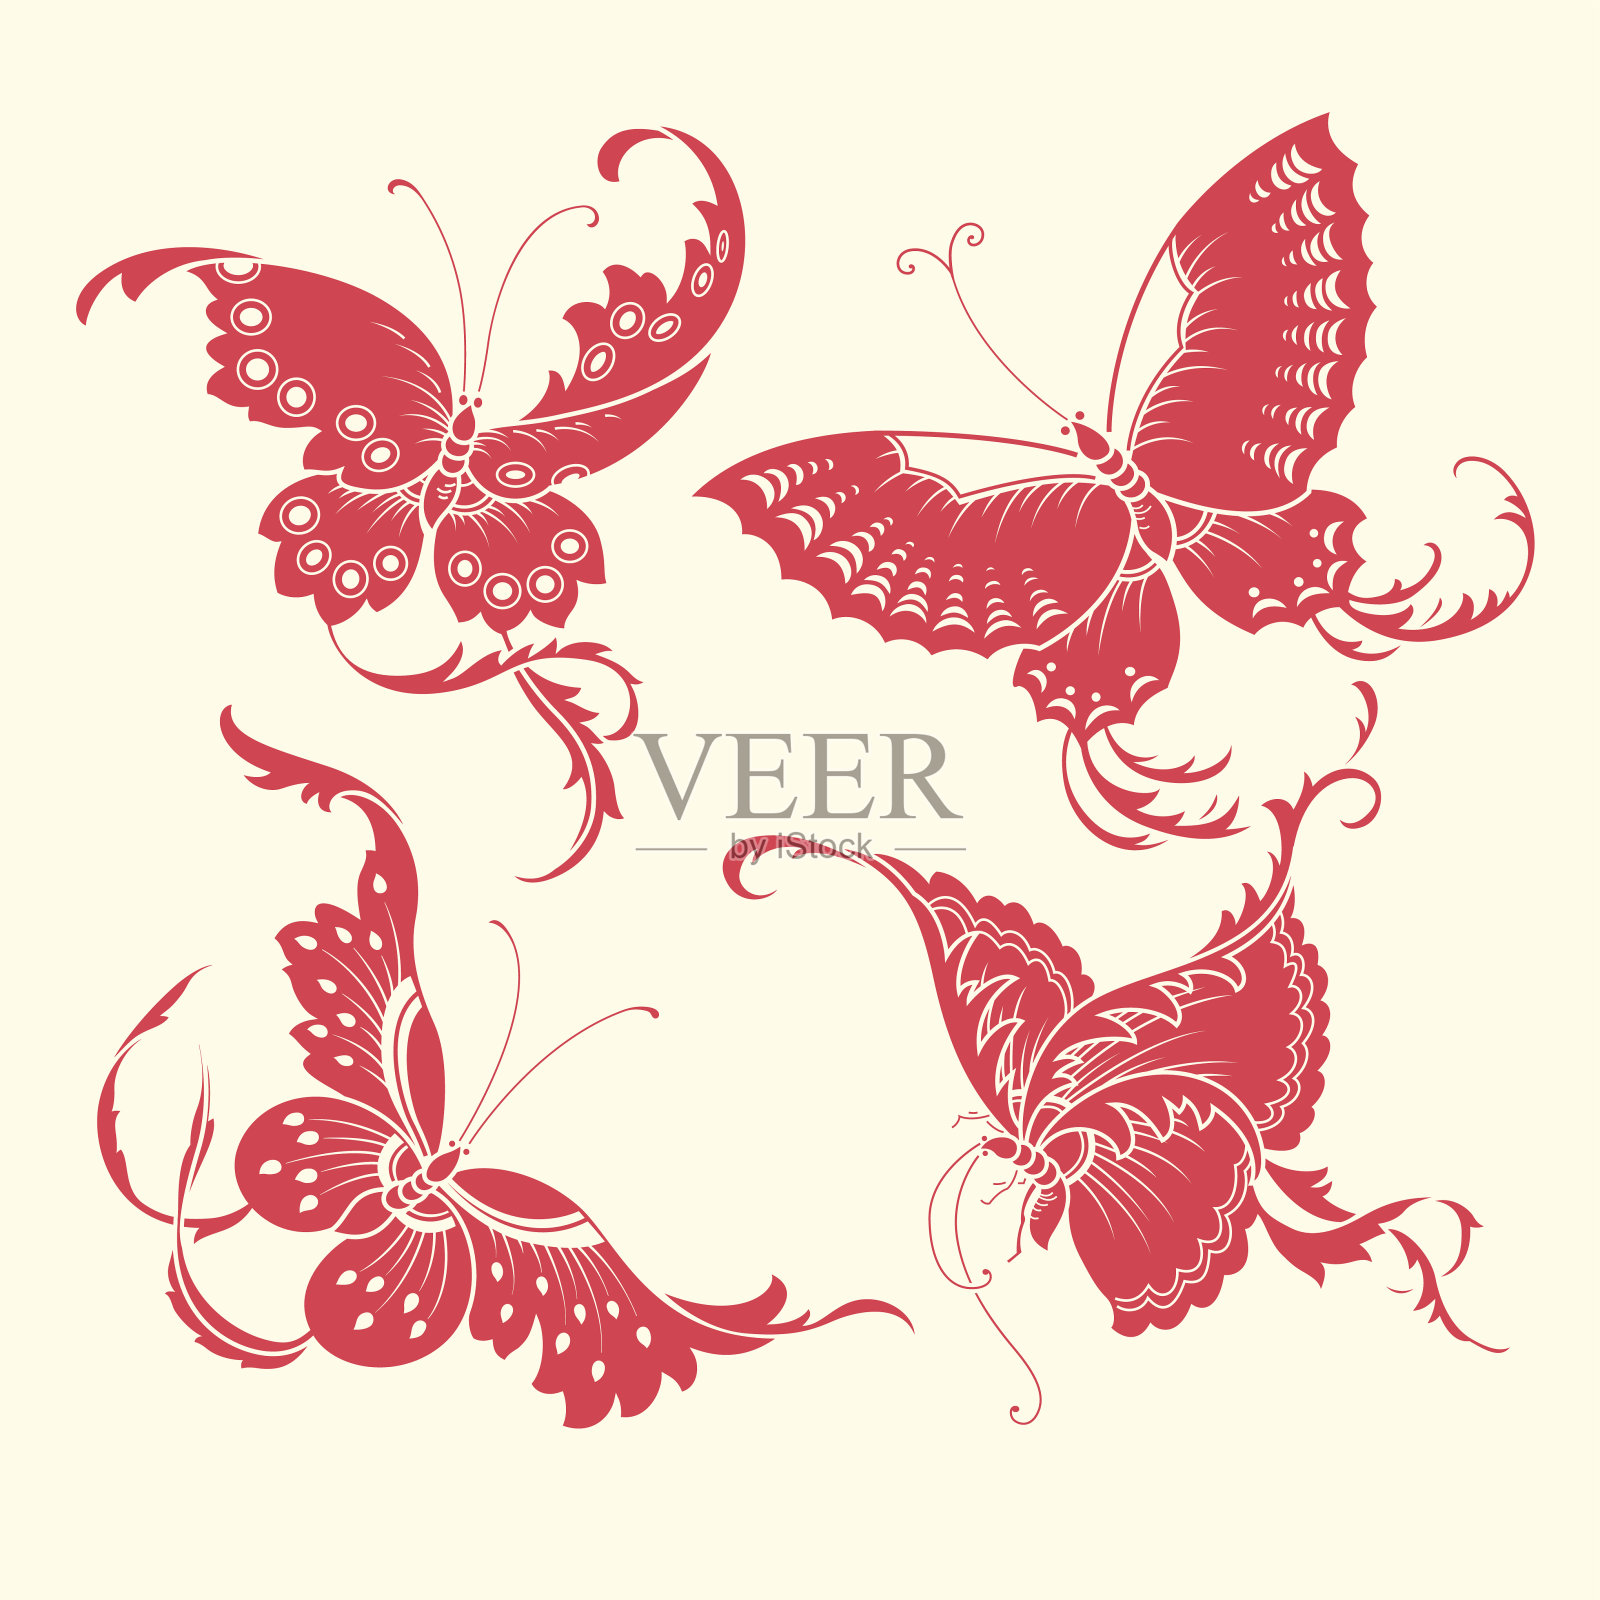 中国风格的蝴蝶图案插画图片素材